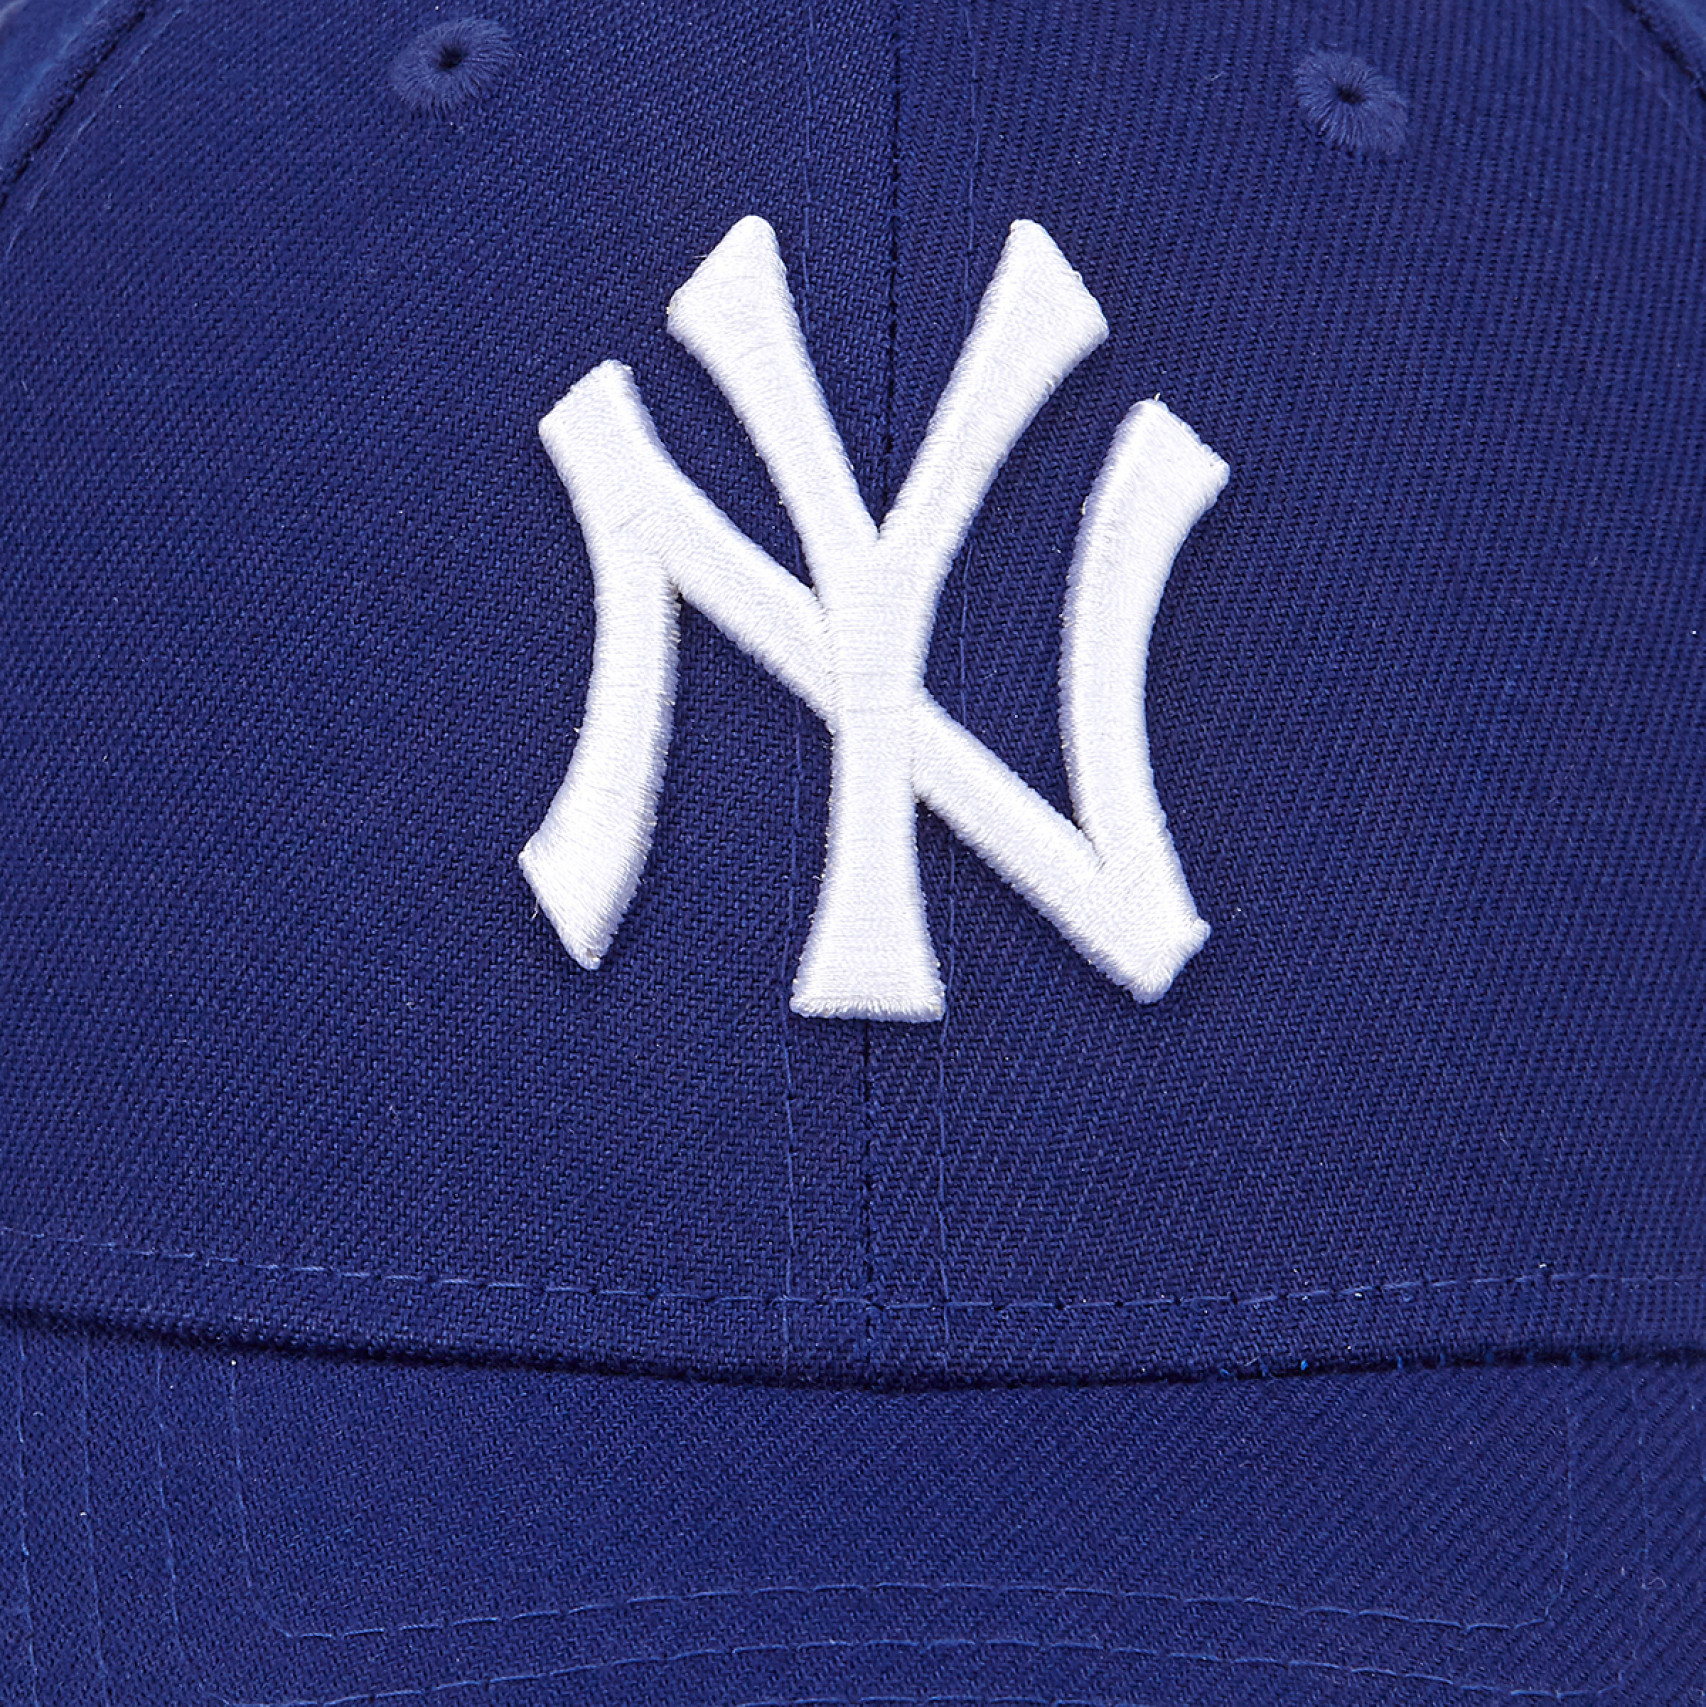 MLB 베이직 뉴욕 양키스 볼캡 다크 로얄 / 14205825